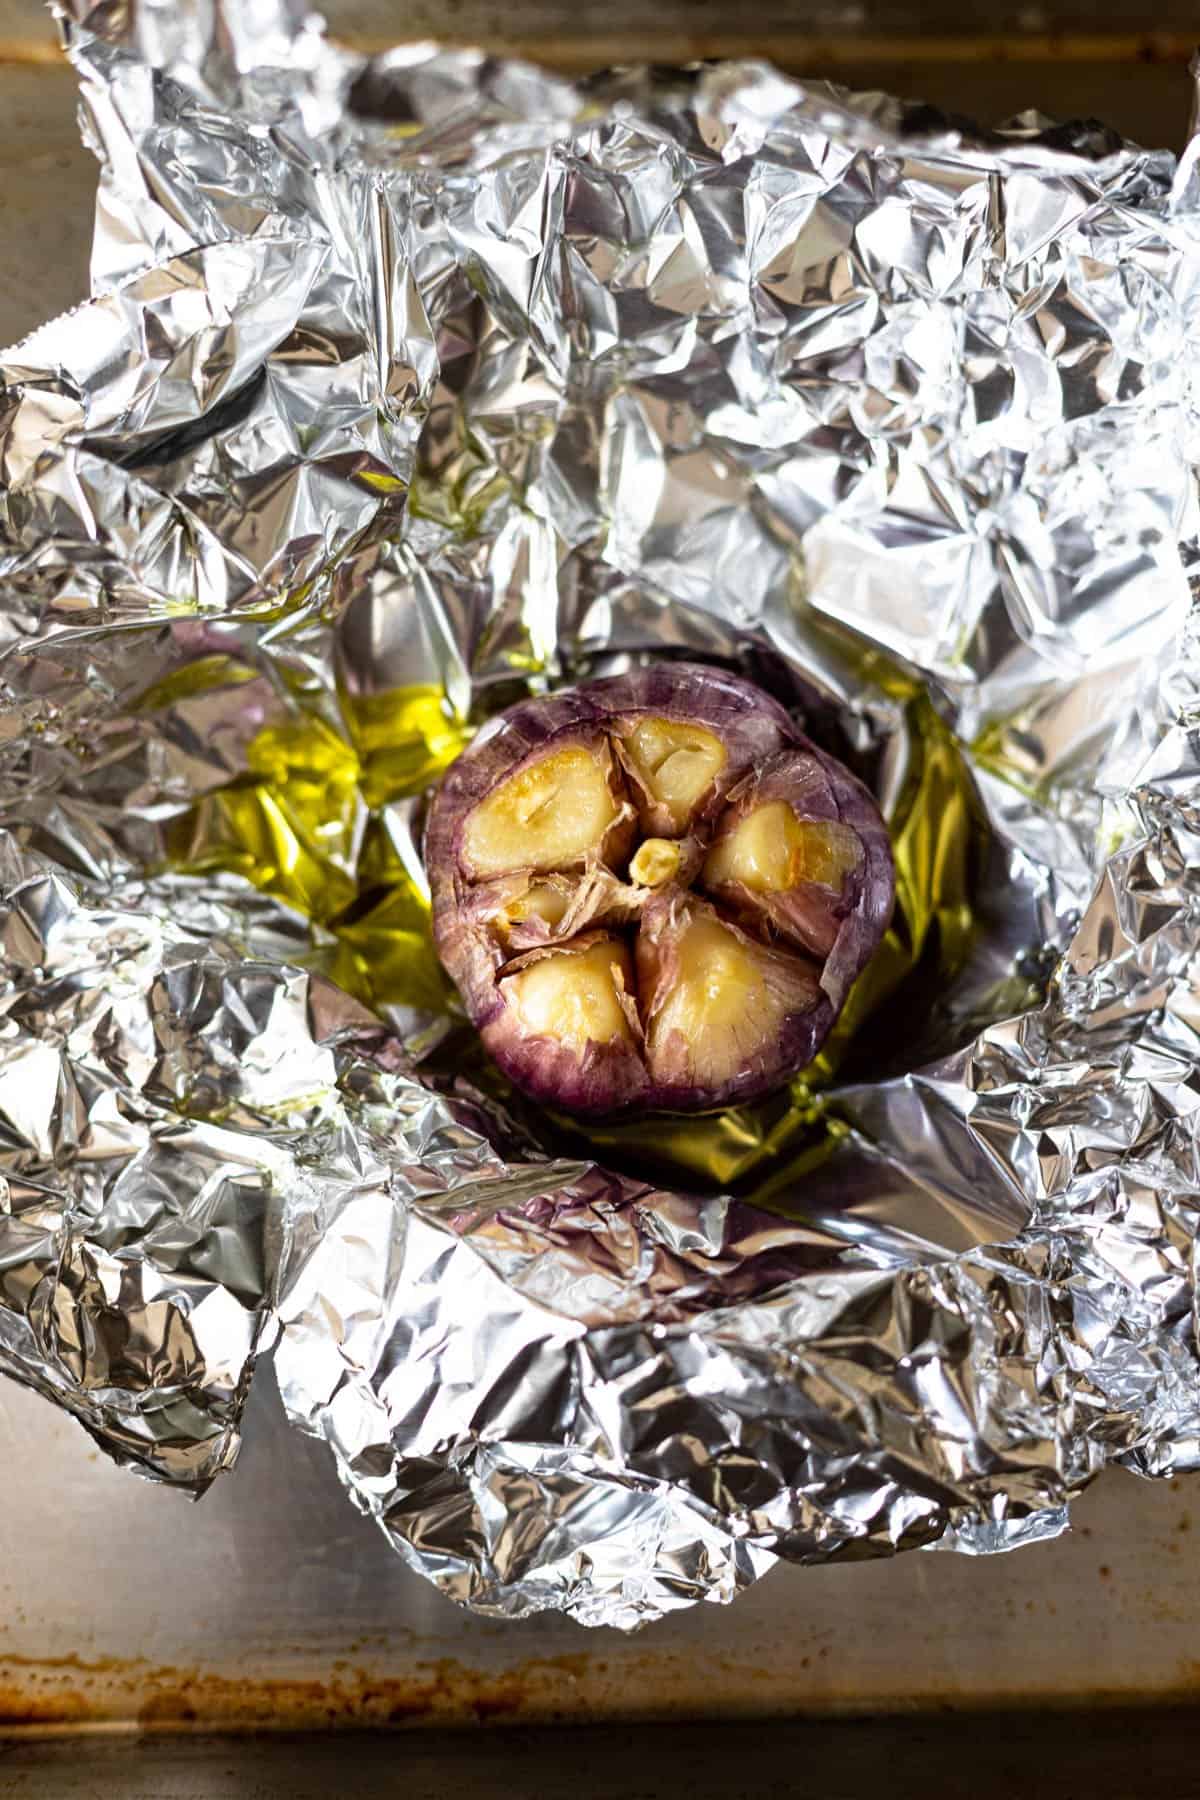 a roasted garlic bulb in foil